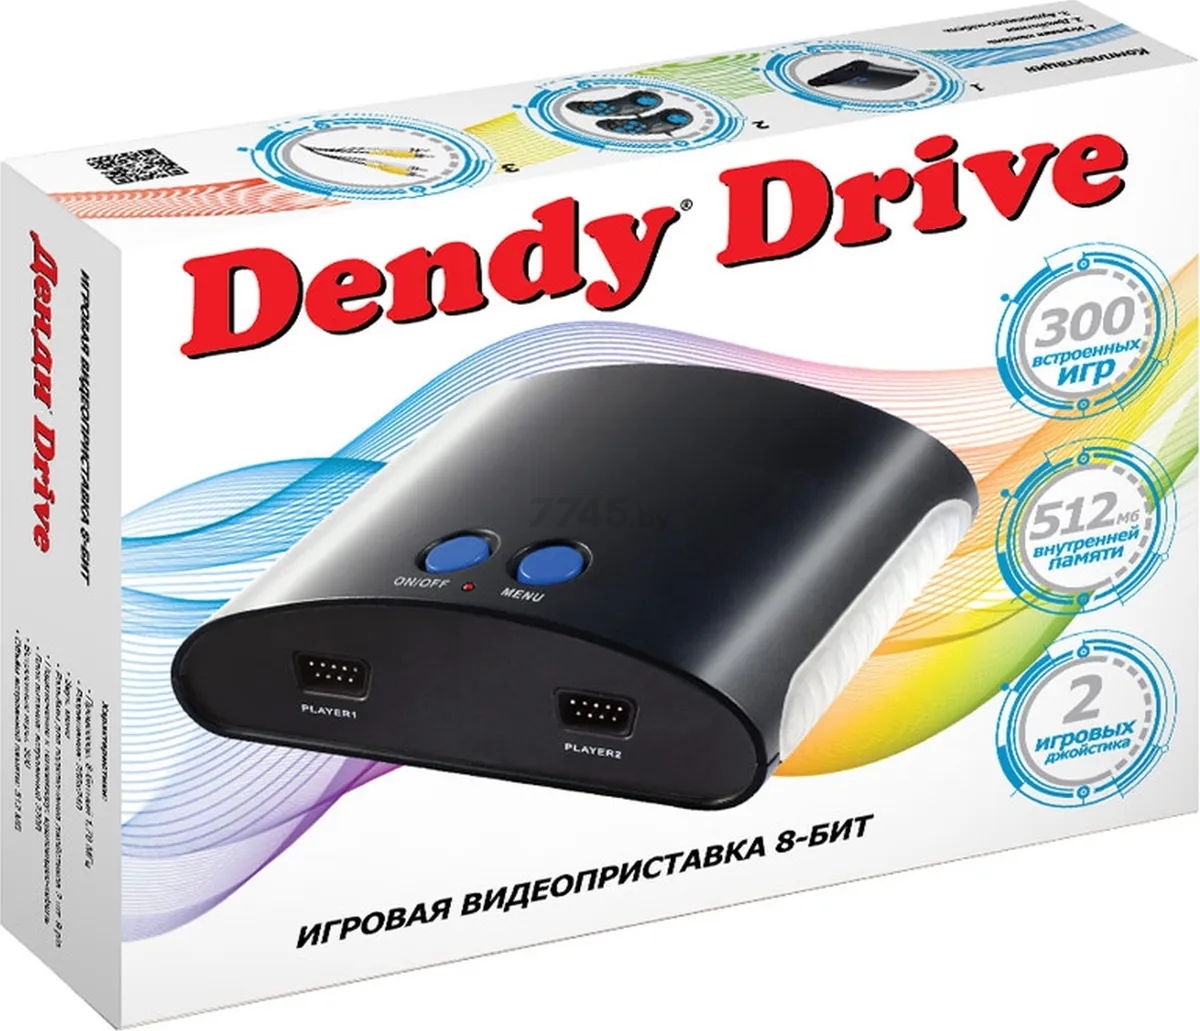 Игровая приставка DENDY Drive 8bit (300 игр) - Фото 10